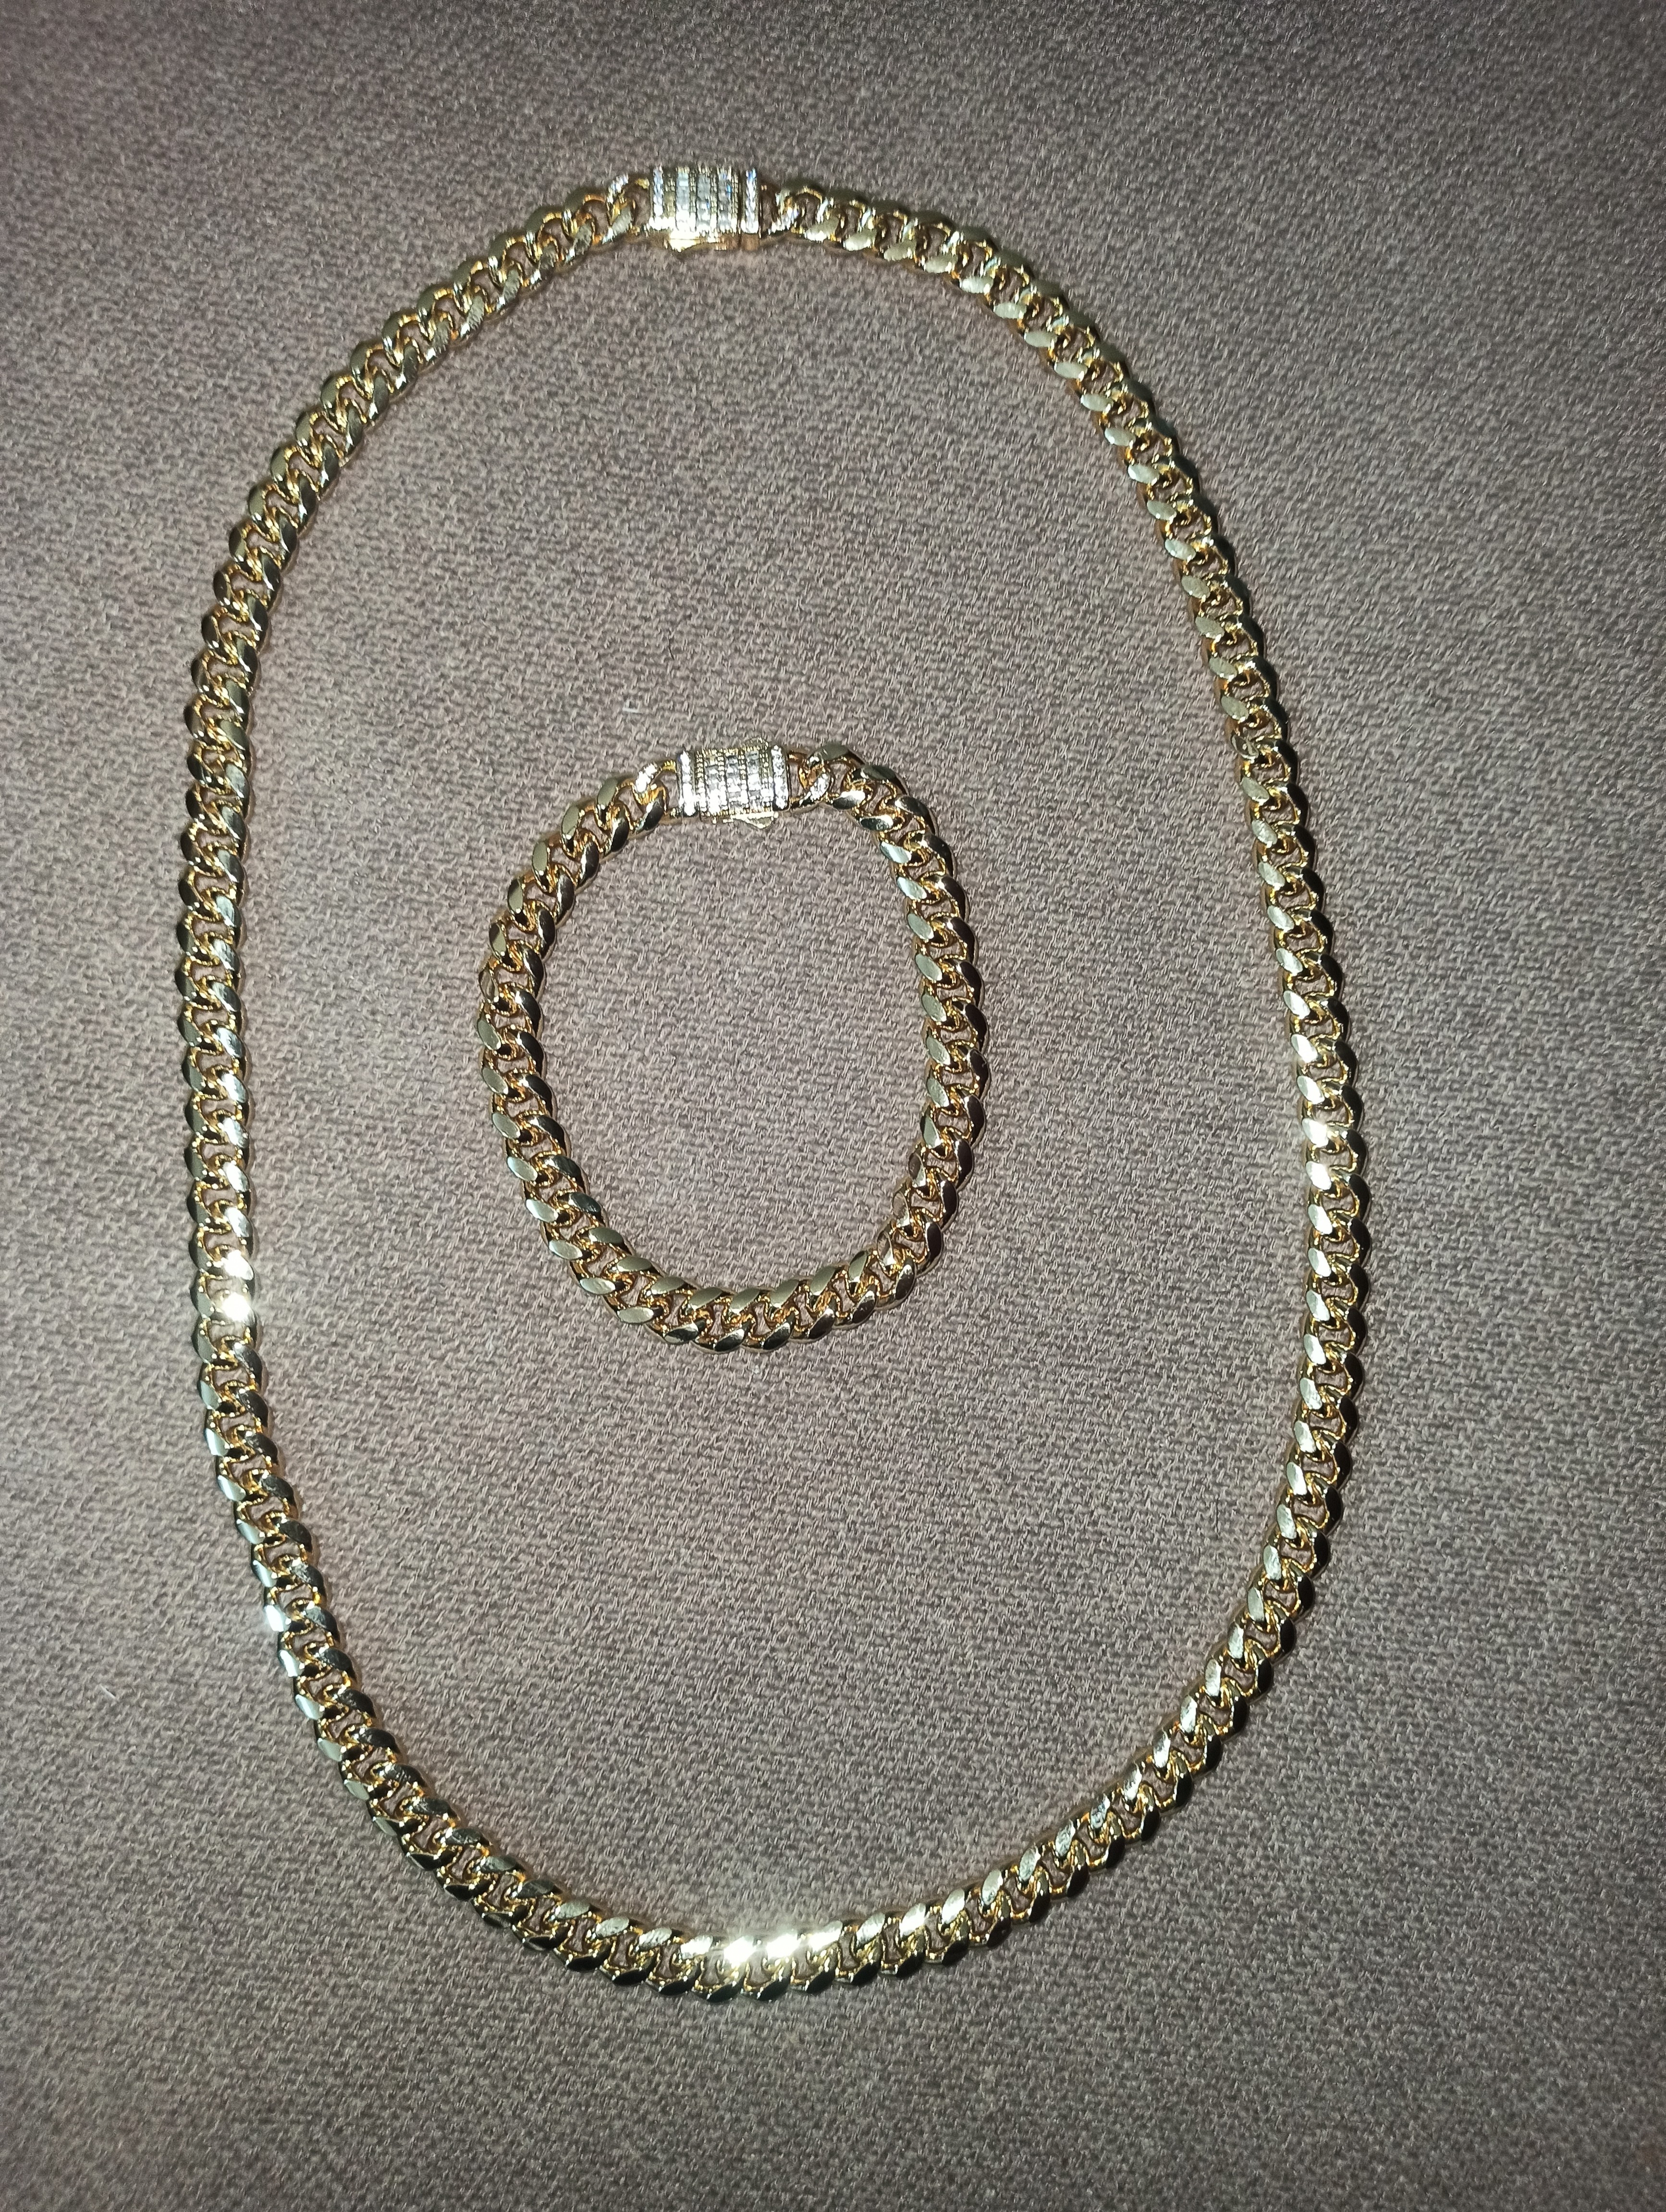 joyas, relojes y accesorios - 1,300
cadena Monaco Choker en acero inoxidable Nueva